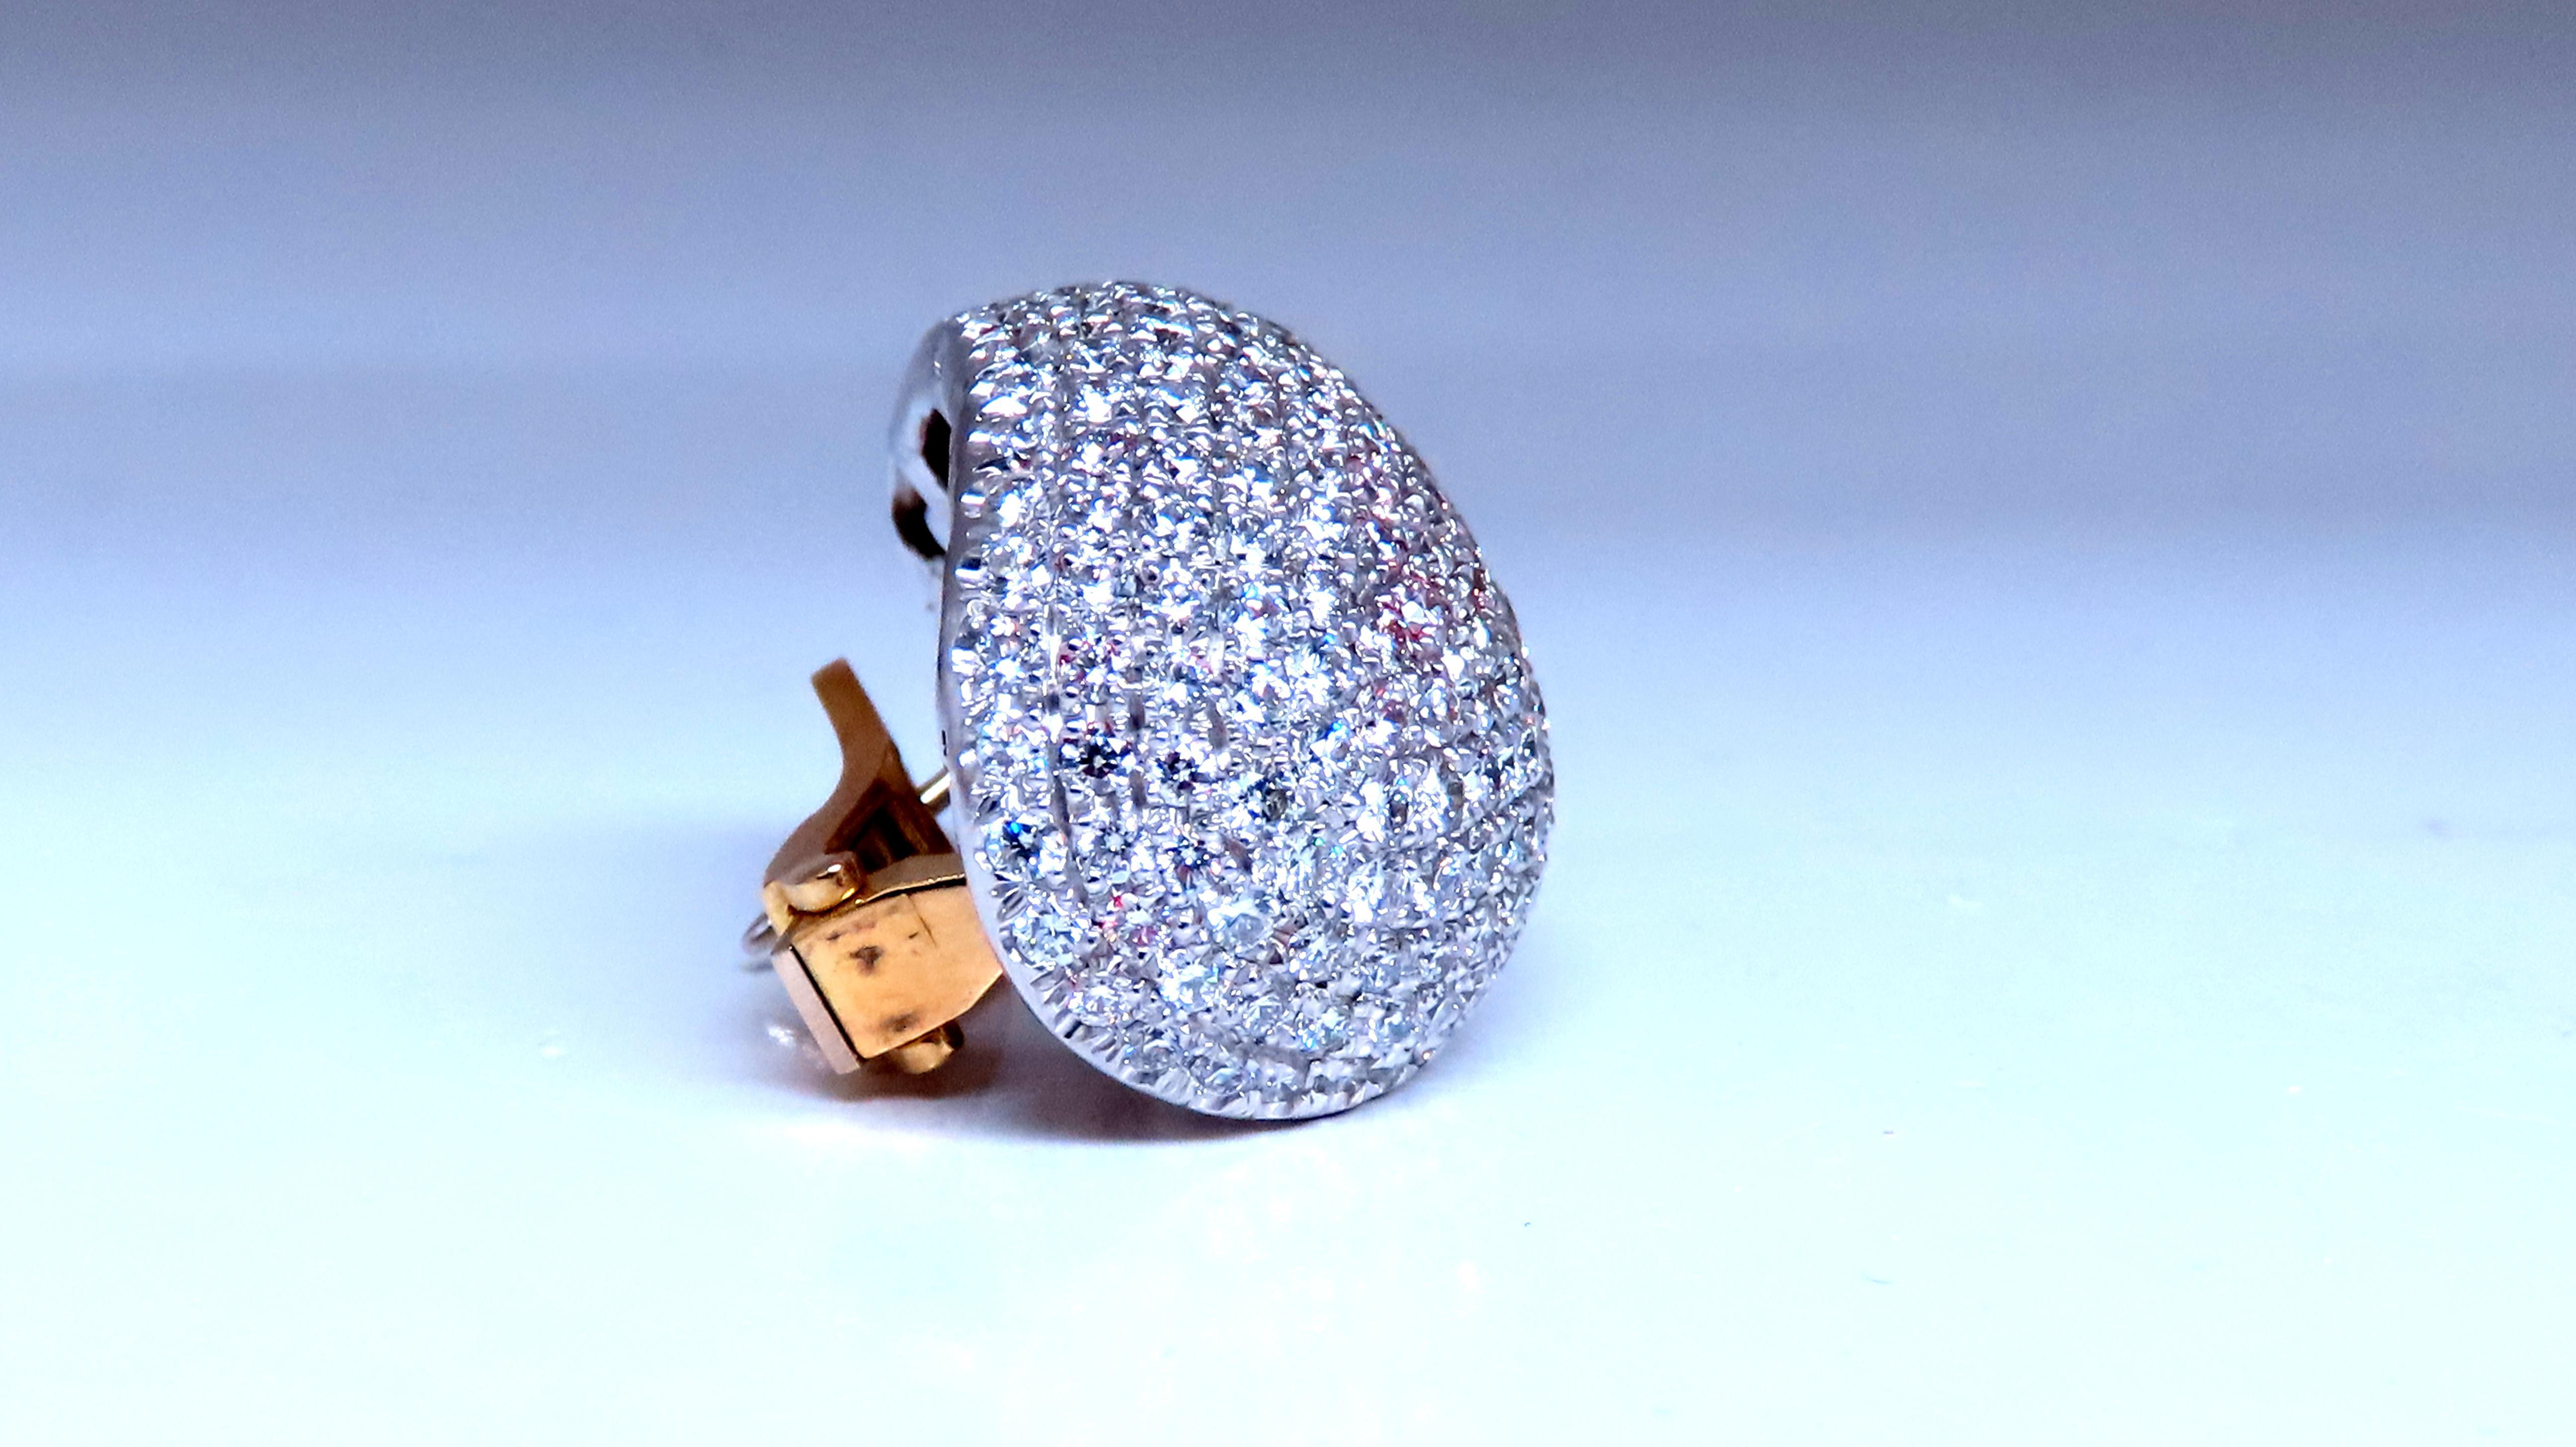 Magnificent Prime

10ct Natürliche Runde Diamanten Clip-Ohrringe
Französische Bombe Oval mit erhabenem Puff 

Französisch Pave Micro Bead Set von Hand 

F-G Farbe / Vs-1 Klarheit

1,1 Zoll lang
.84 Zoll breit
.53 Zoll Tiefe

18kt. Weißgold & 18kt.